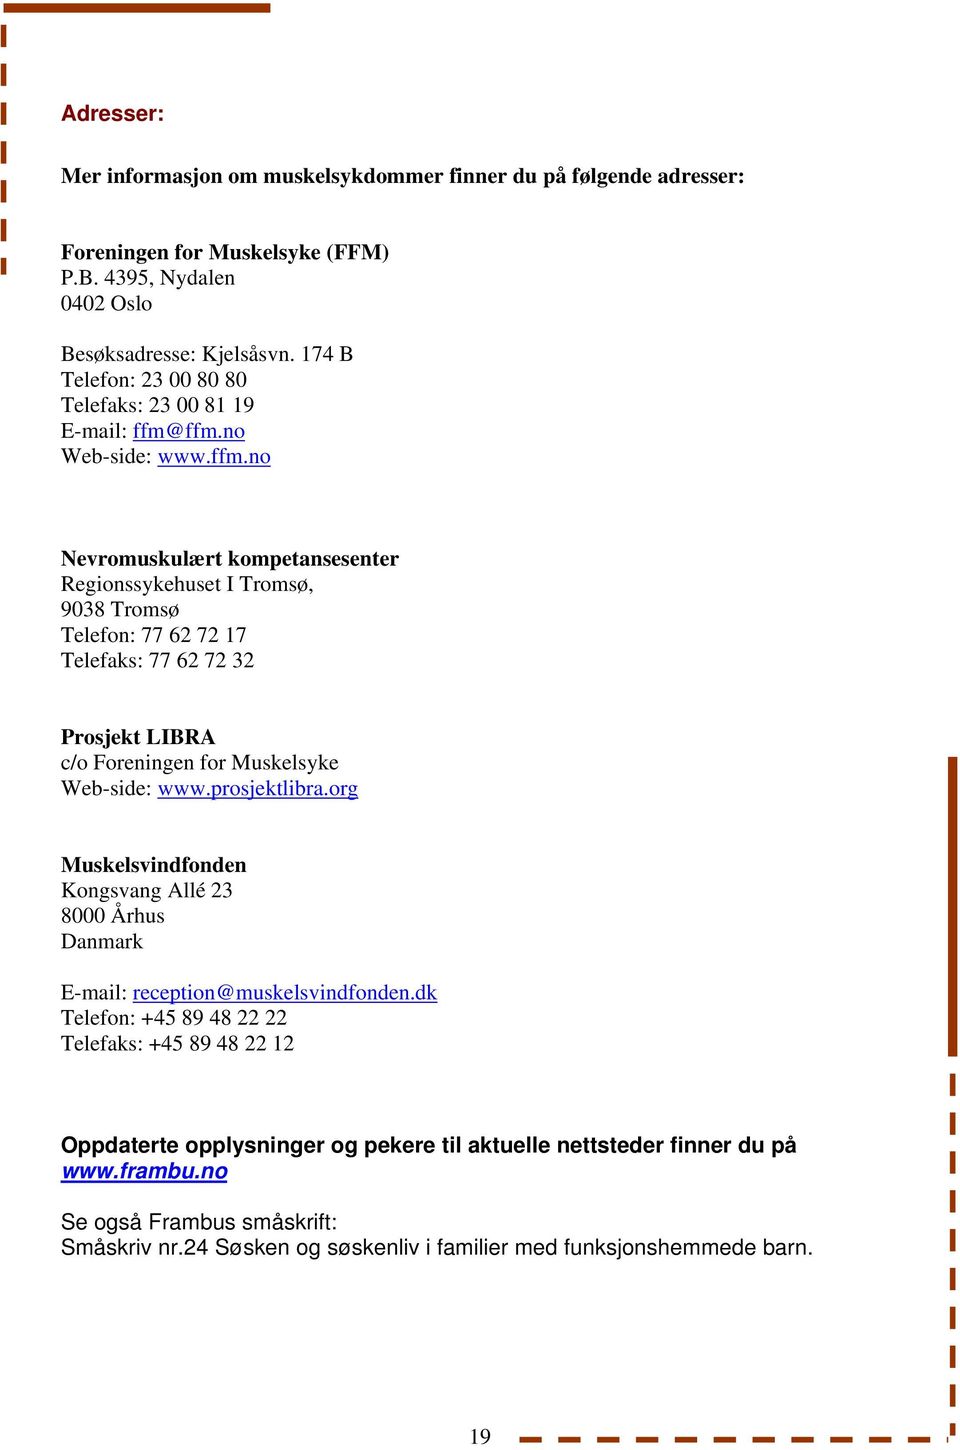 ffm.no Web-side: www.ffm.no Nevromuskulært kompetansesenter Regionssykehuset I Tromsø, 9038 Tromsø Telefon: 77 62 72 17 Telefaks: 77 62 72 32 Prosjekt LIBRA c/o Foreningen for Muskelsyke Web-side: www.